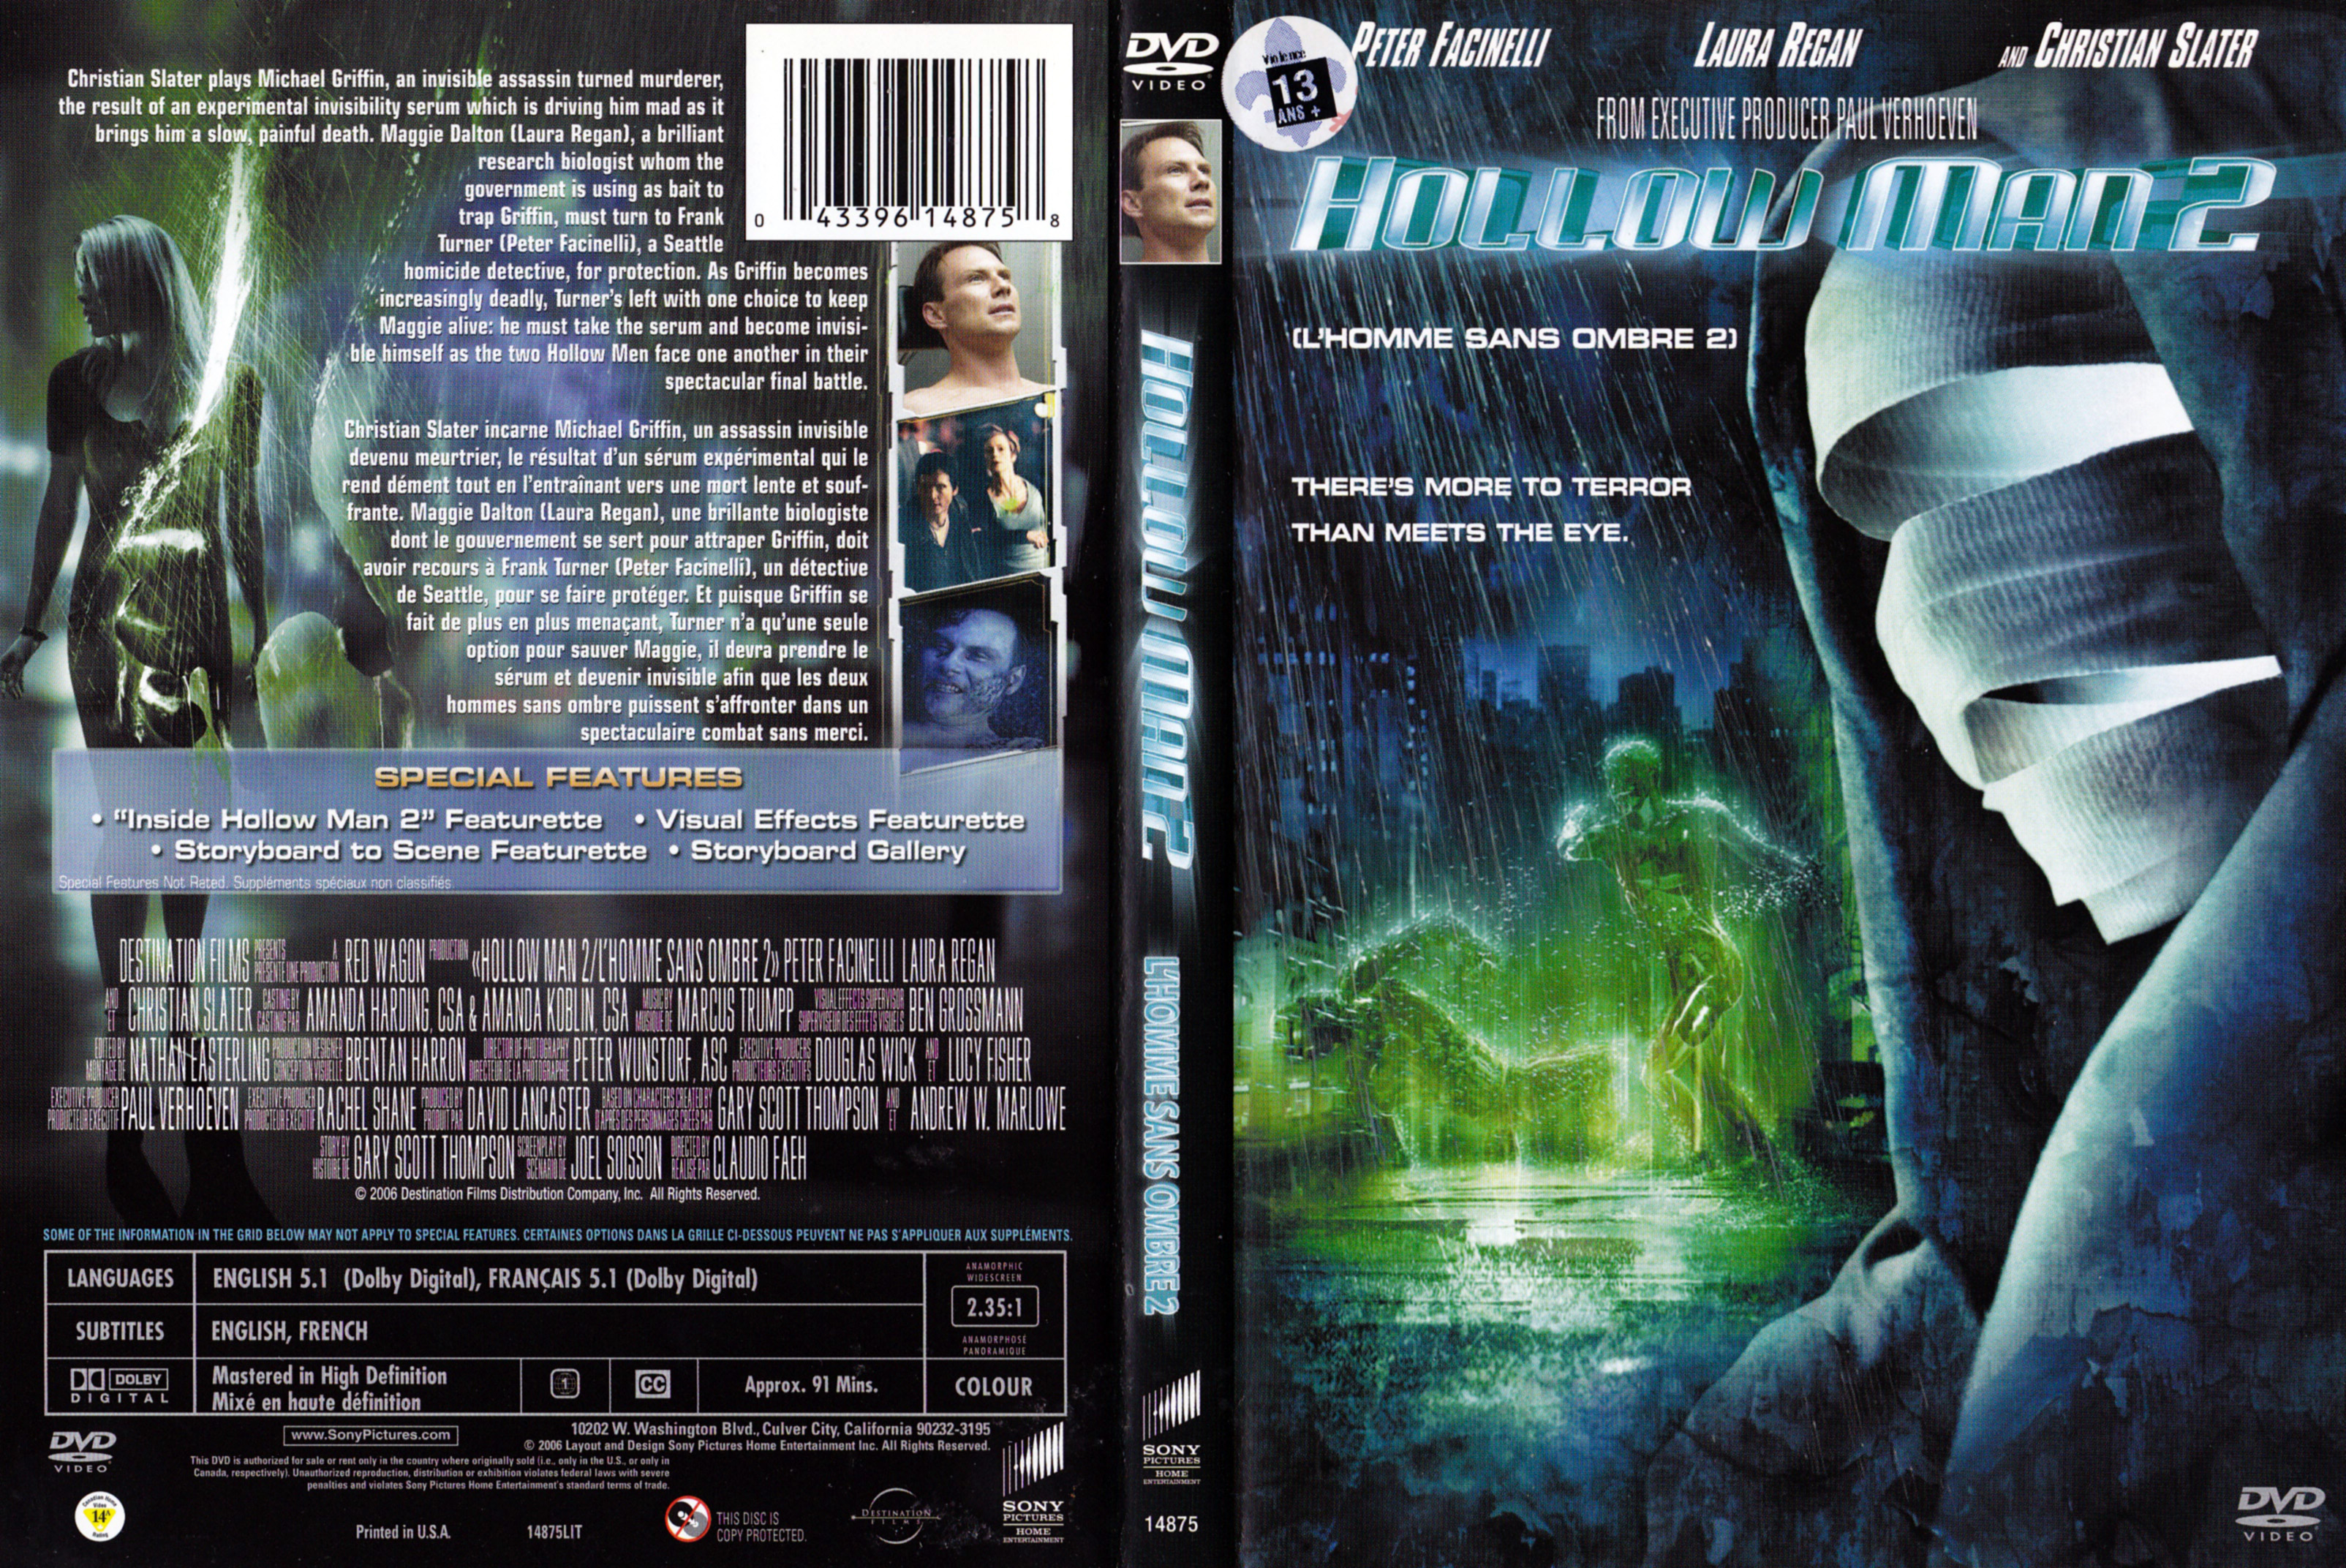 Jaquette DVD Hollow man 2 - L